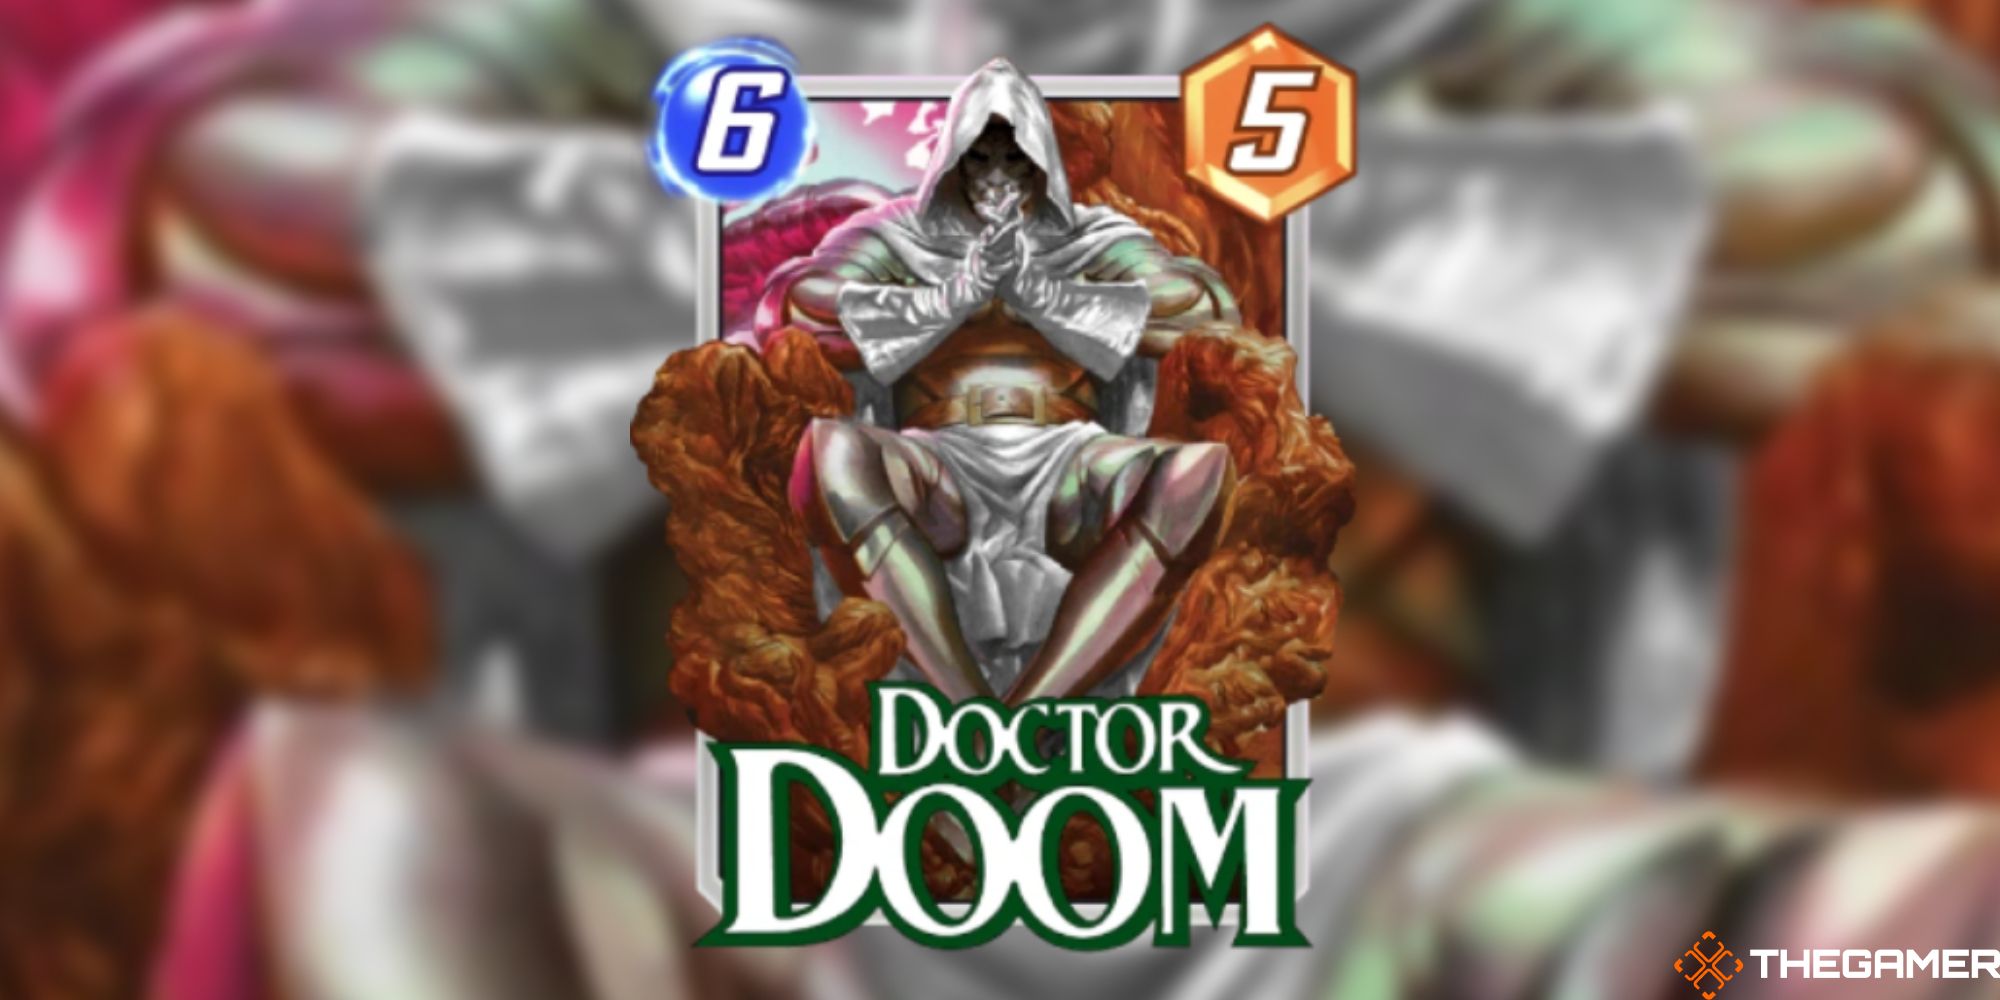 Marvel Snap - Doctor Doom Variant on a blurred background